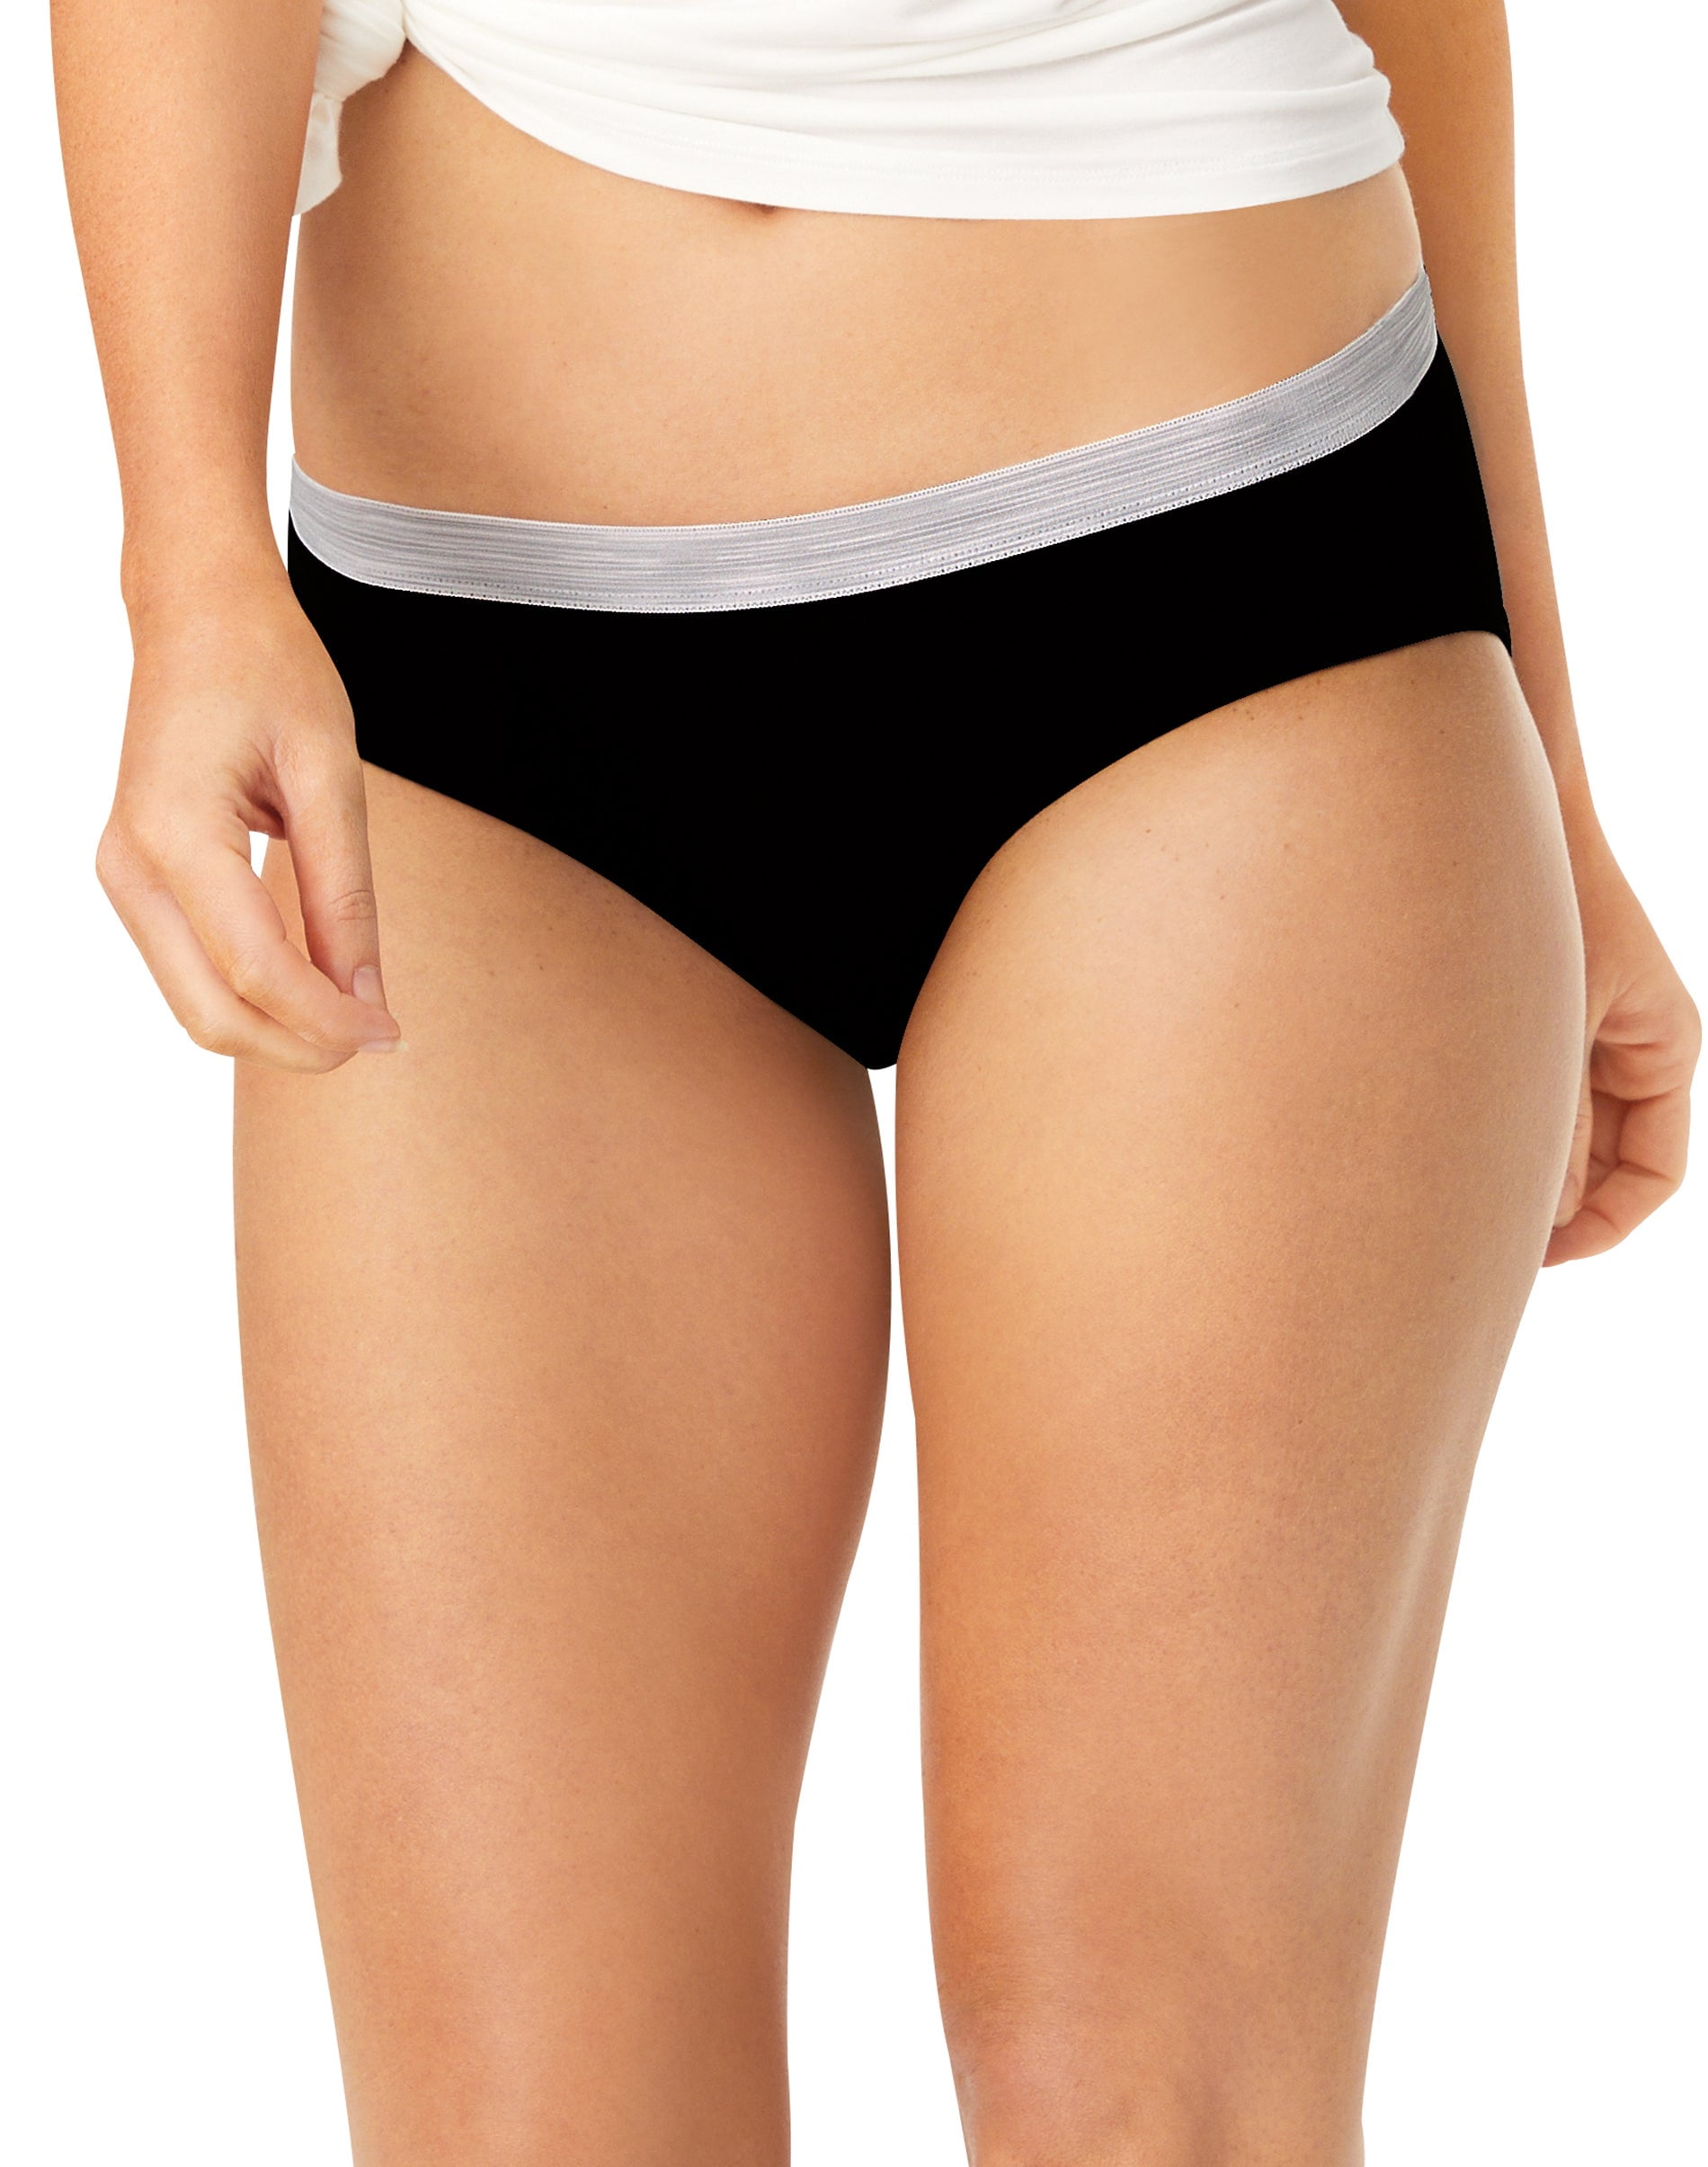 Hanes Women's Cotton Hipster Underwear, Moisture-Wicking, 6-Pack Basic 6